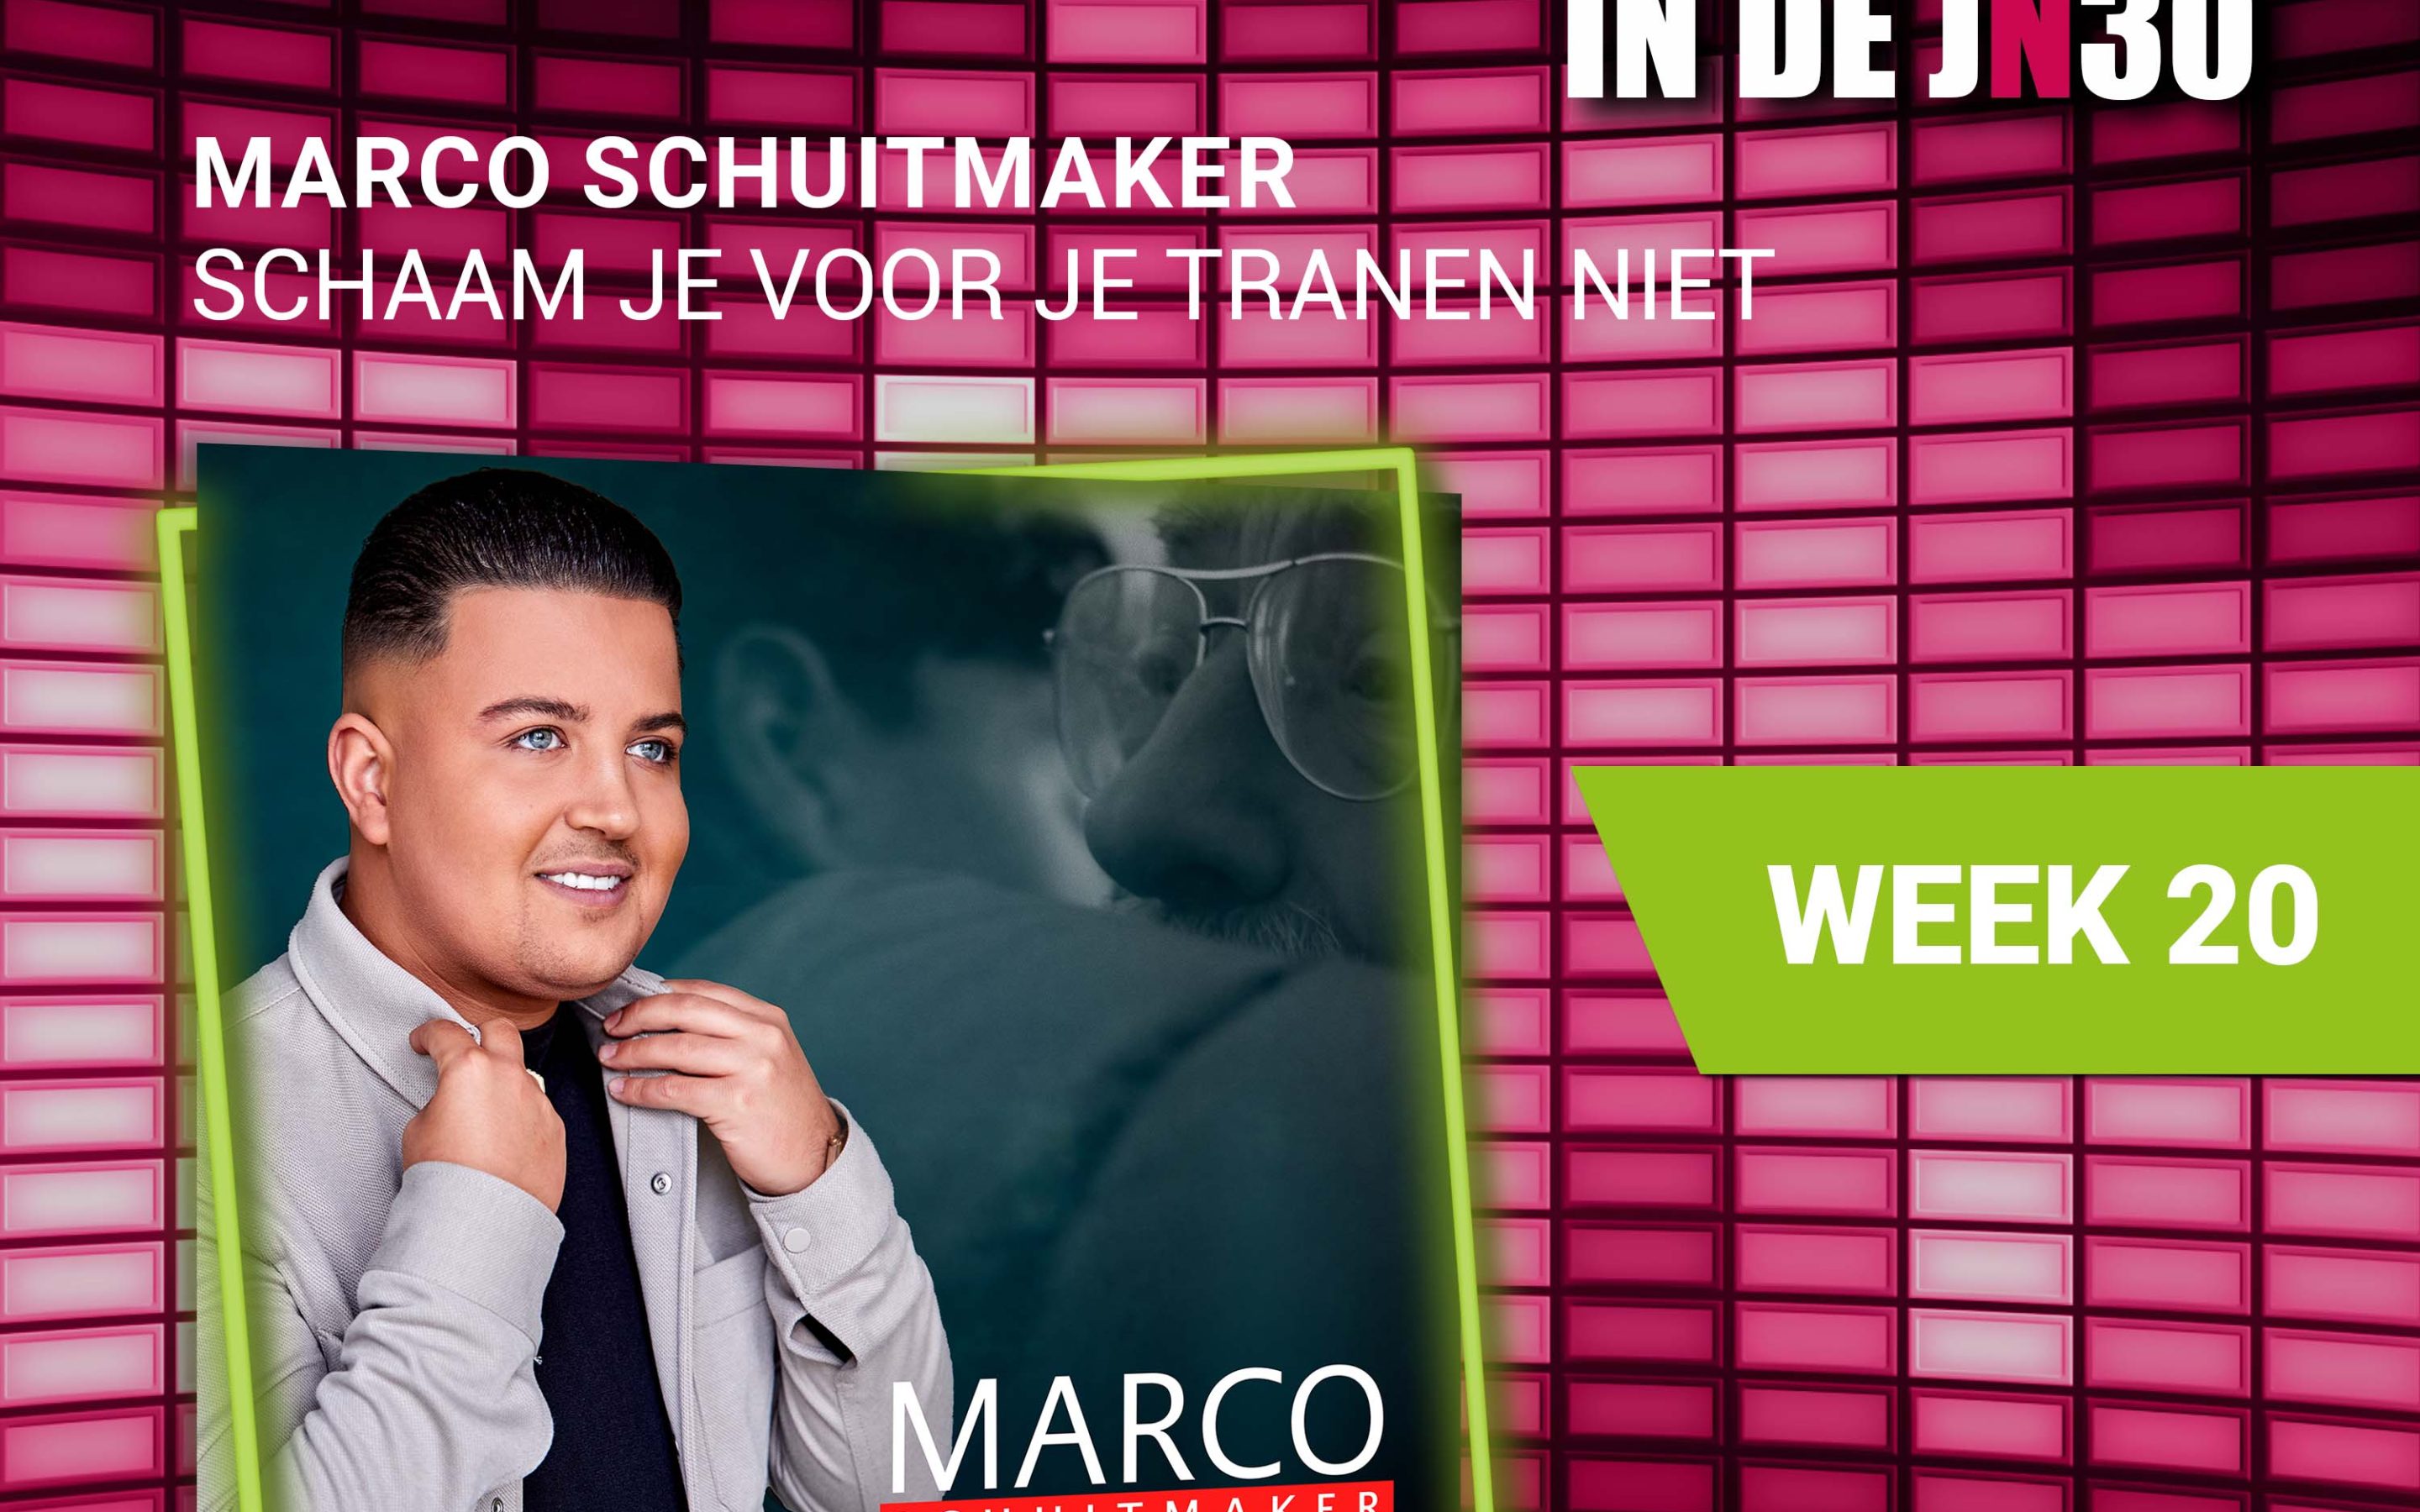 Marco Schuitmaker – Schaam Je Voor Je Tranen Niet de nieuwe nummer 1# in de JN30